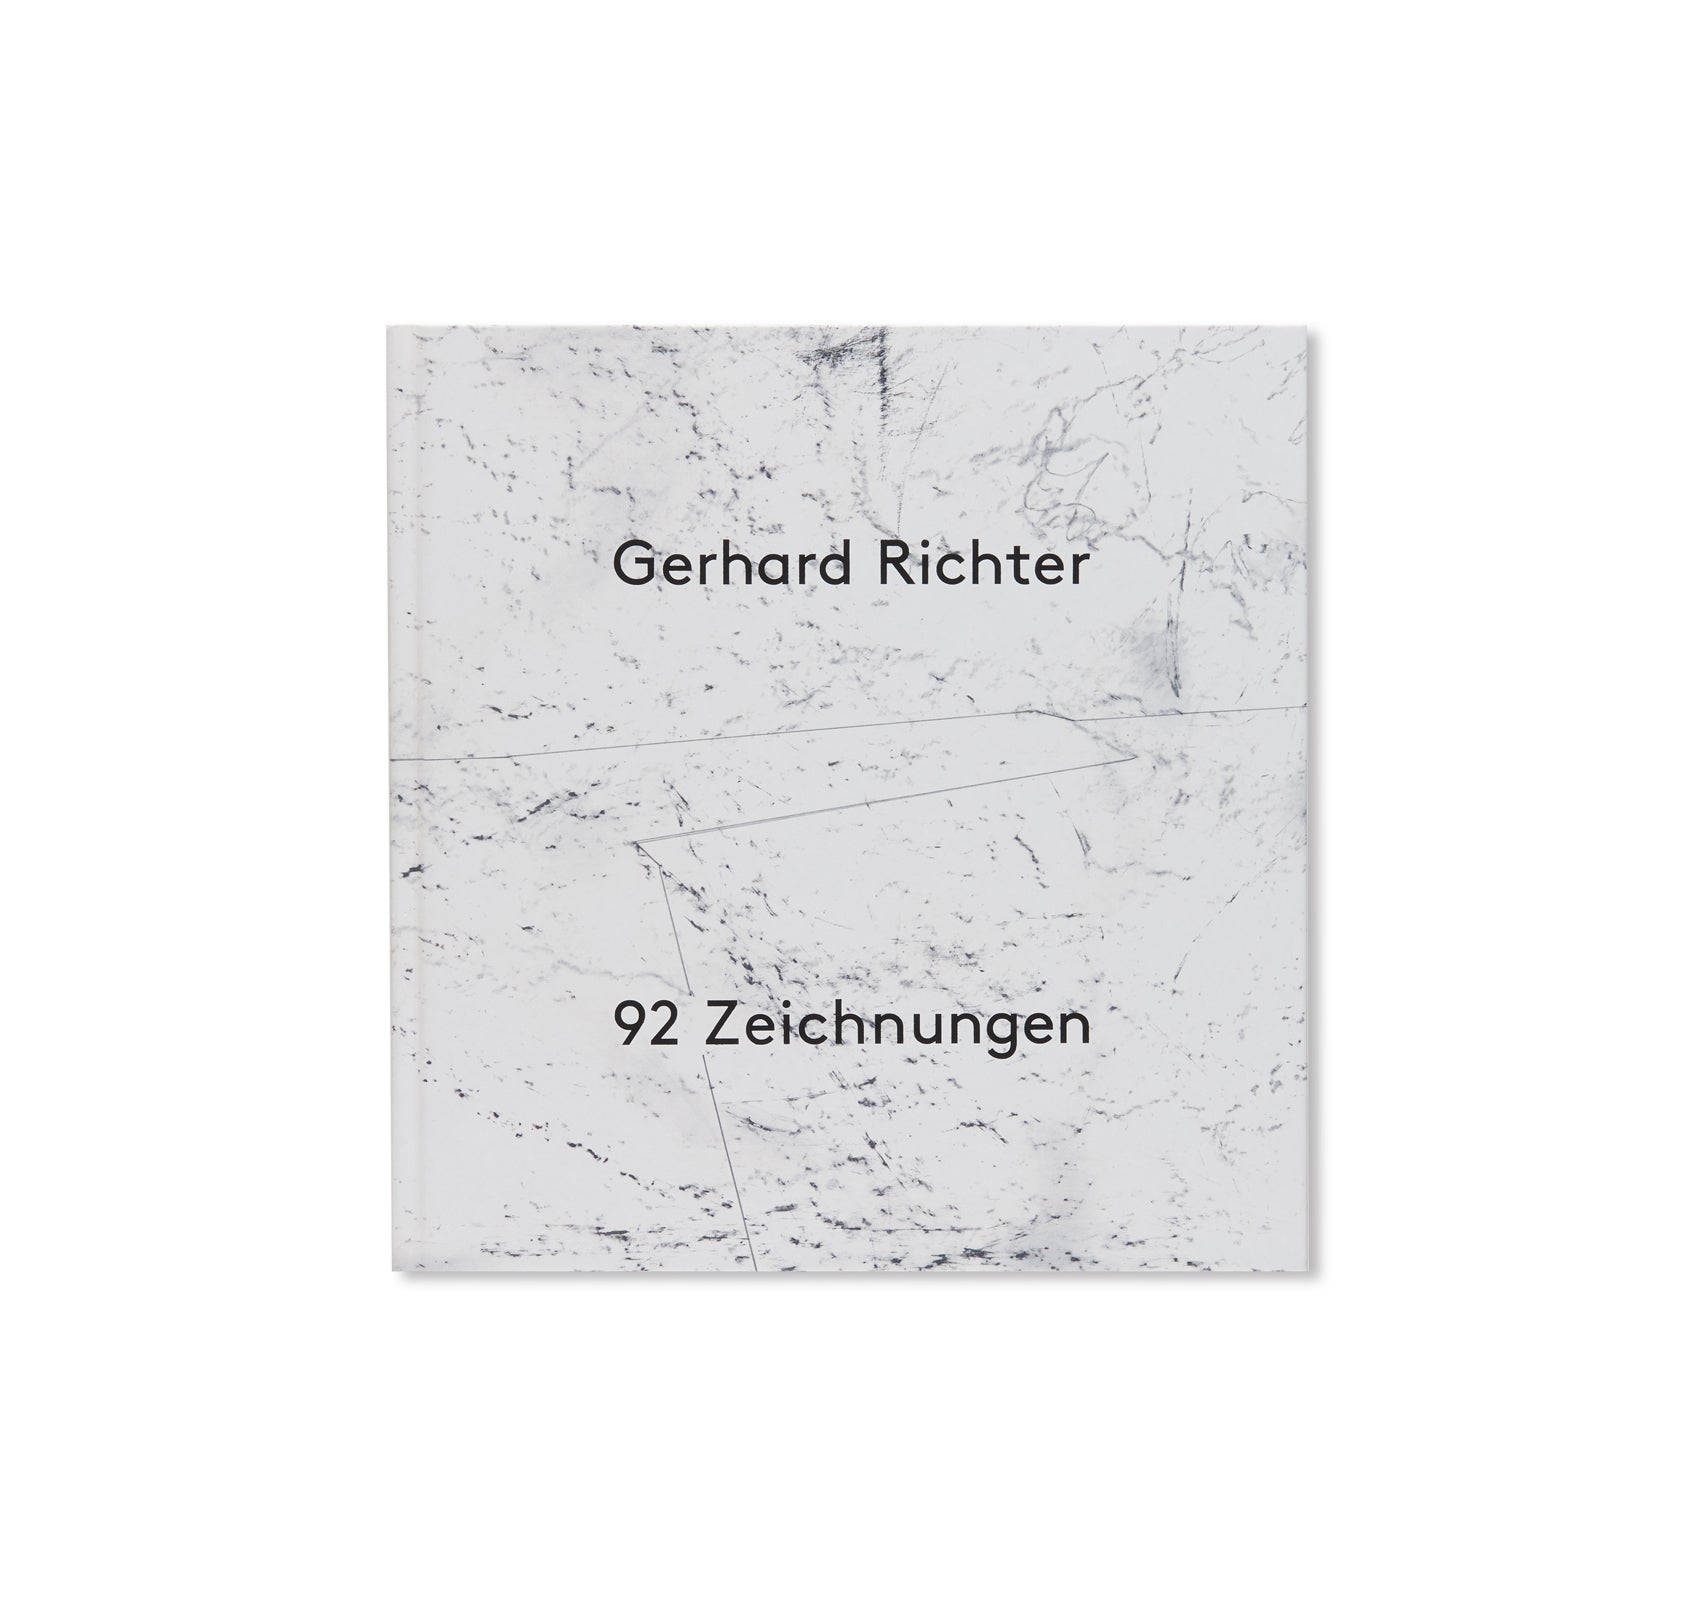 92 ZEICHNUNGEN / 92 DRAWINGS by Gerhard Richter – twelvebooks